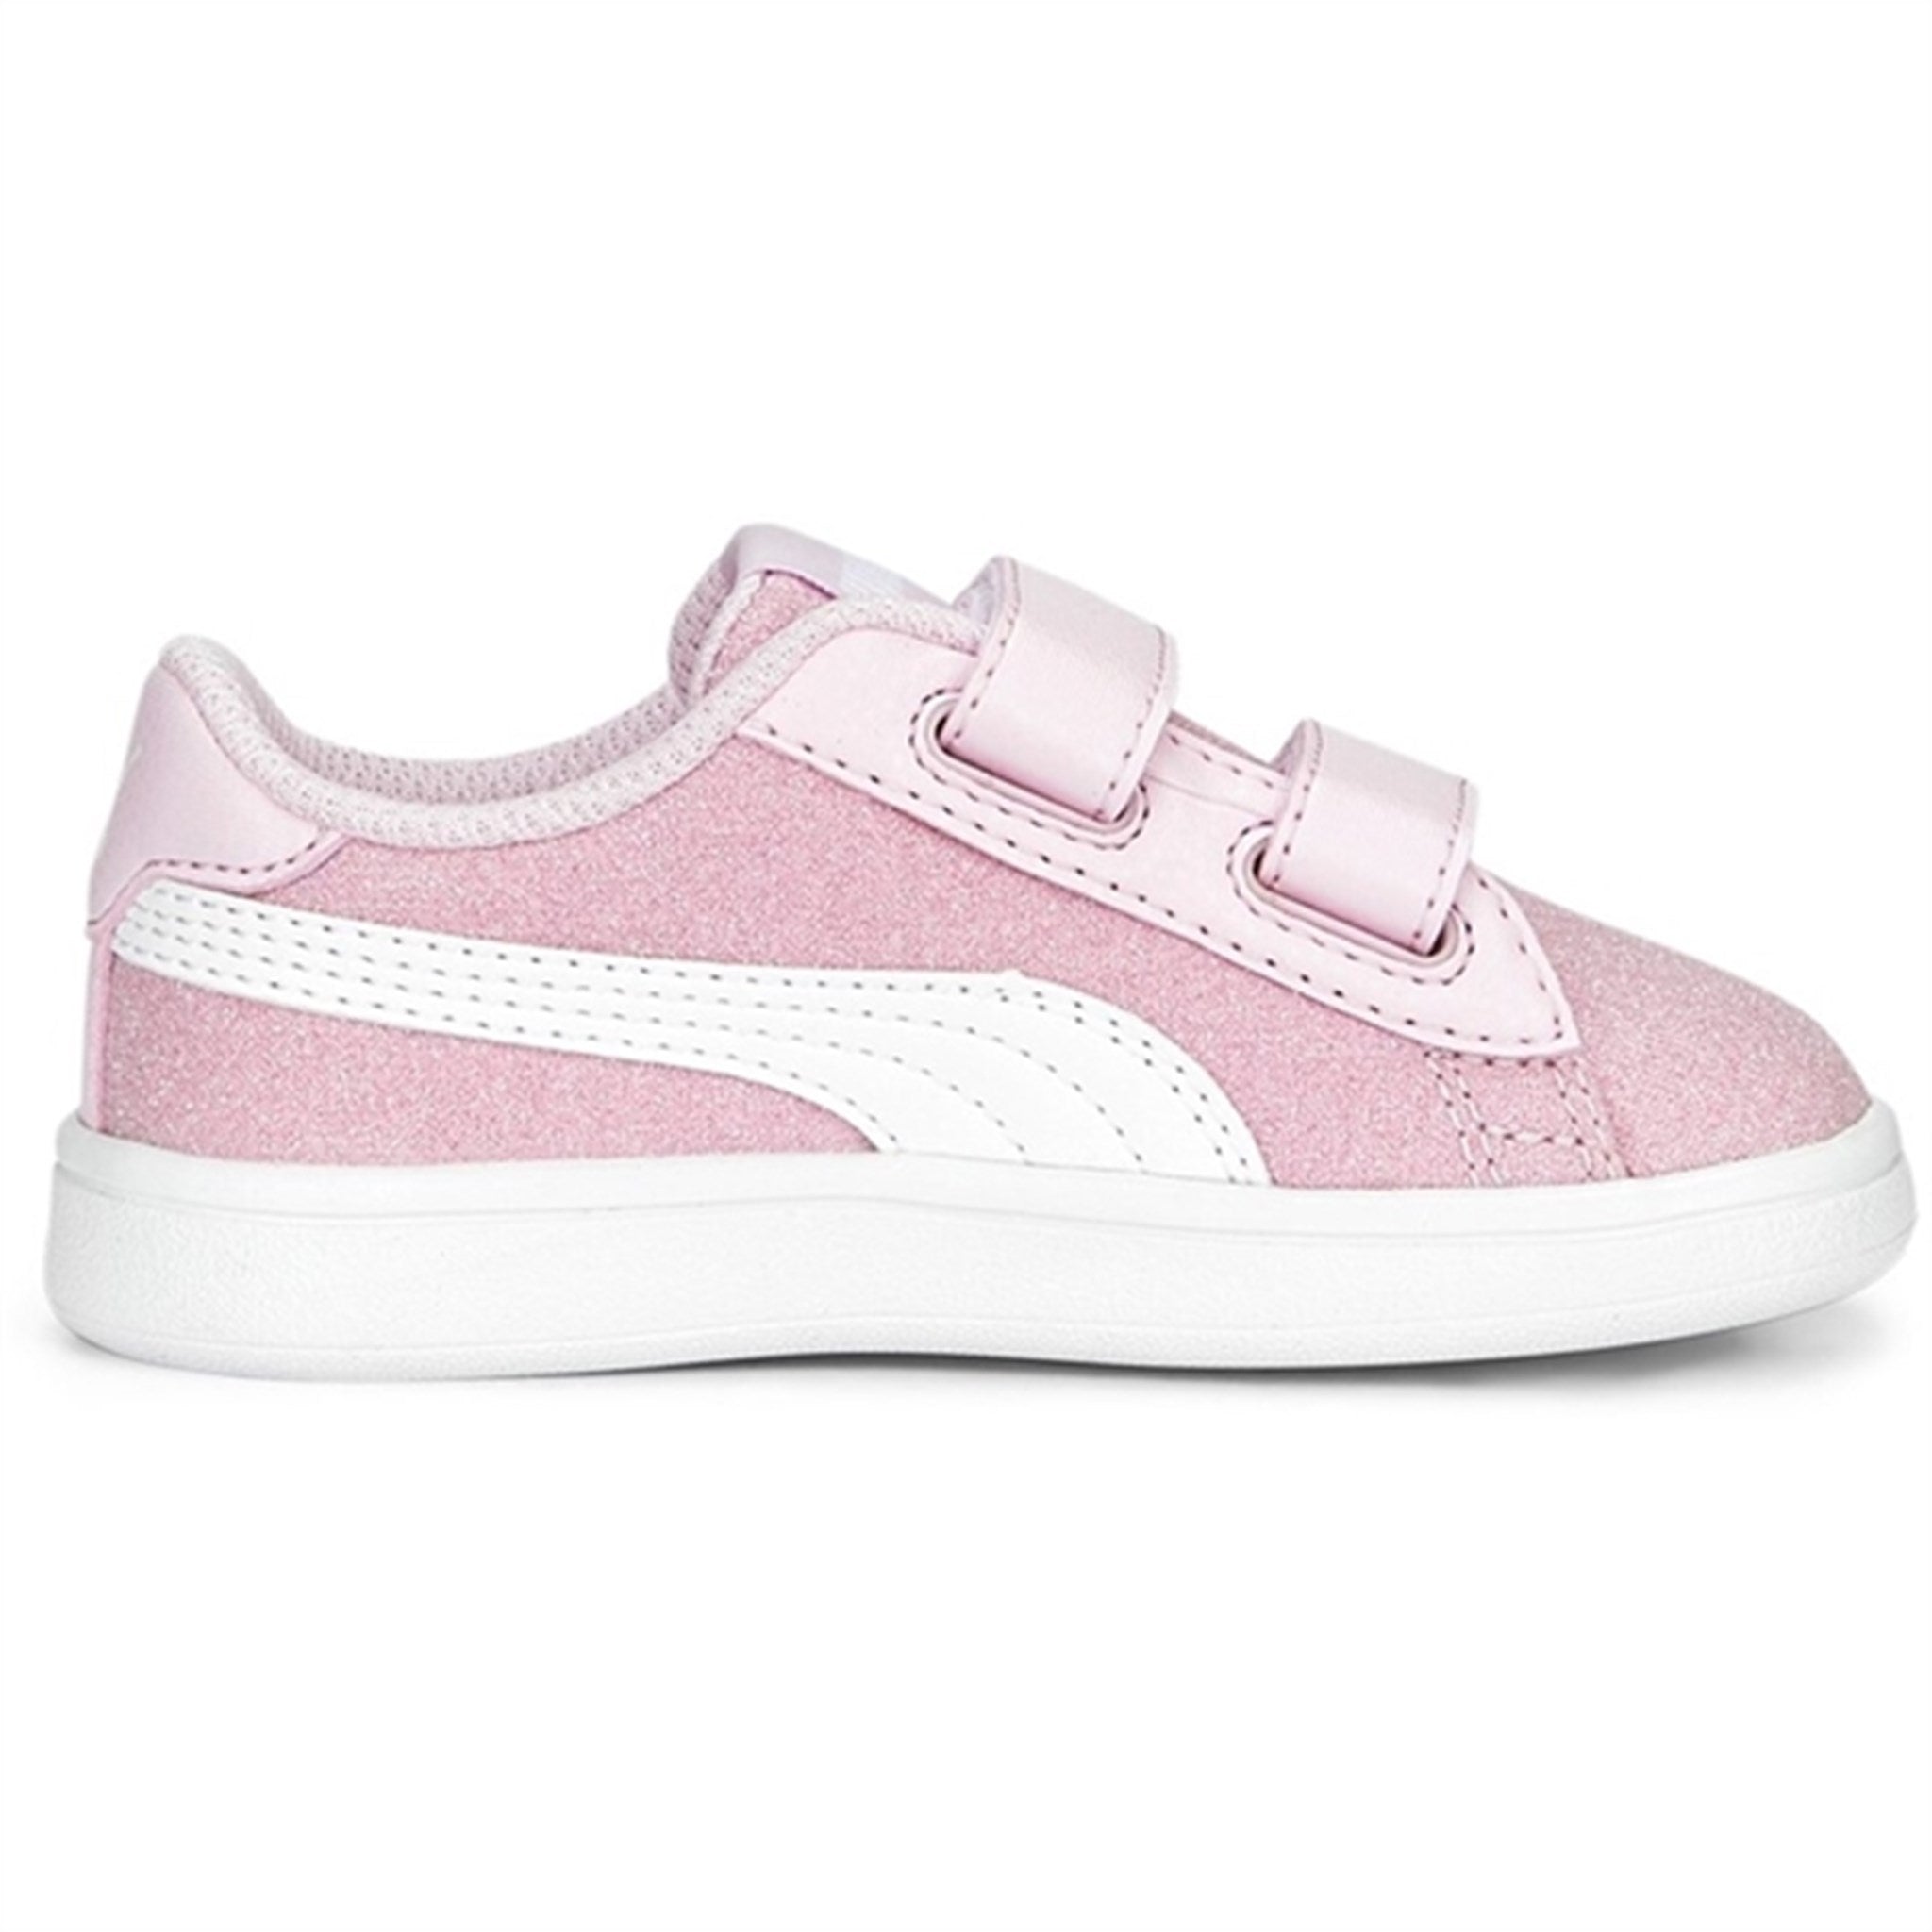 Puma Smash v2 Glitz Glam V Inf Pearl Pink-White Sneakers 2